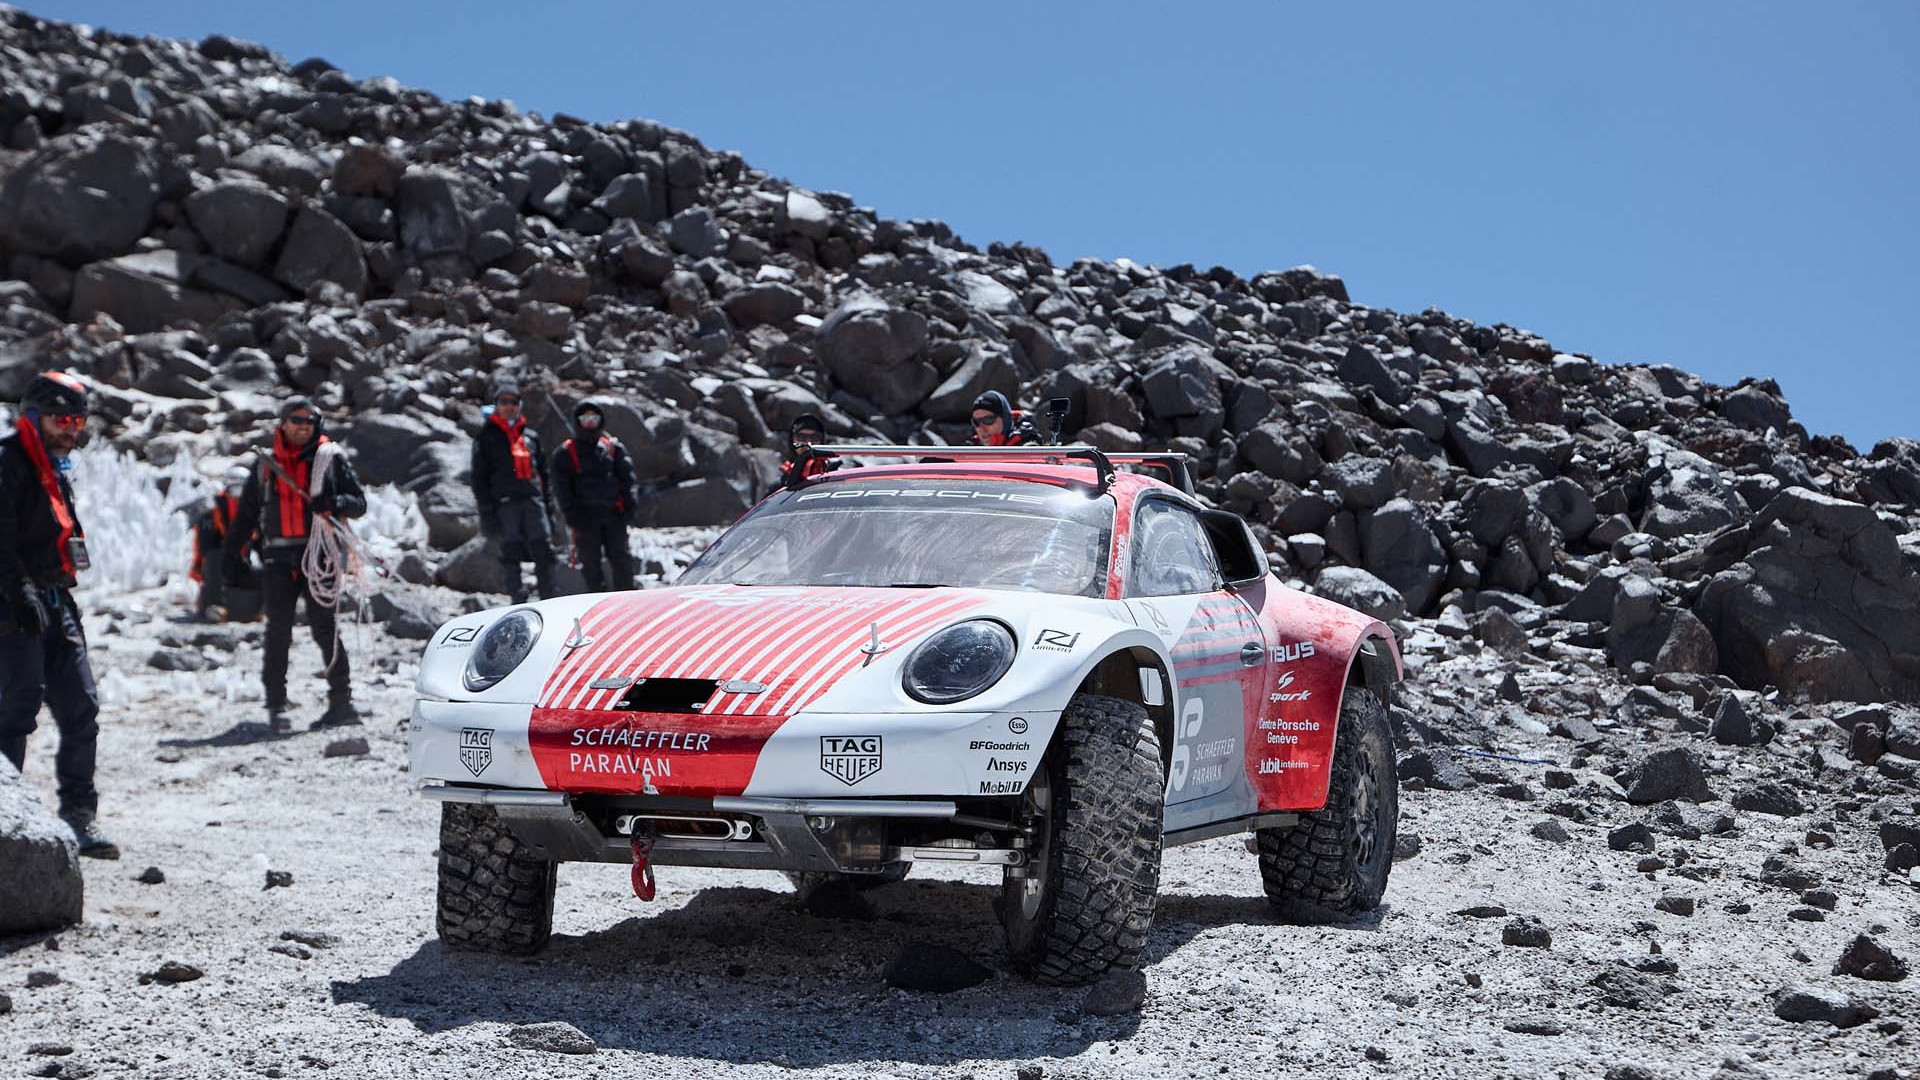 Rugged Porsche 911 duo climb world's tallest volcano